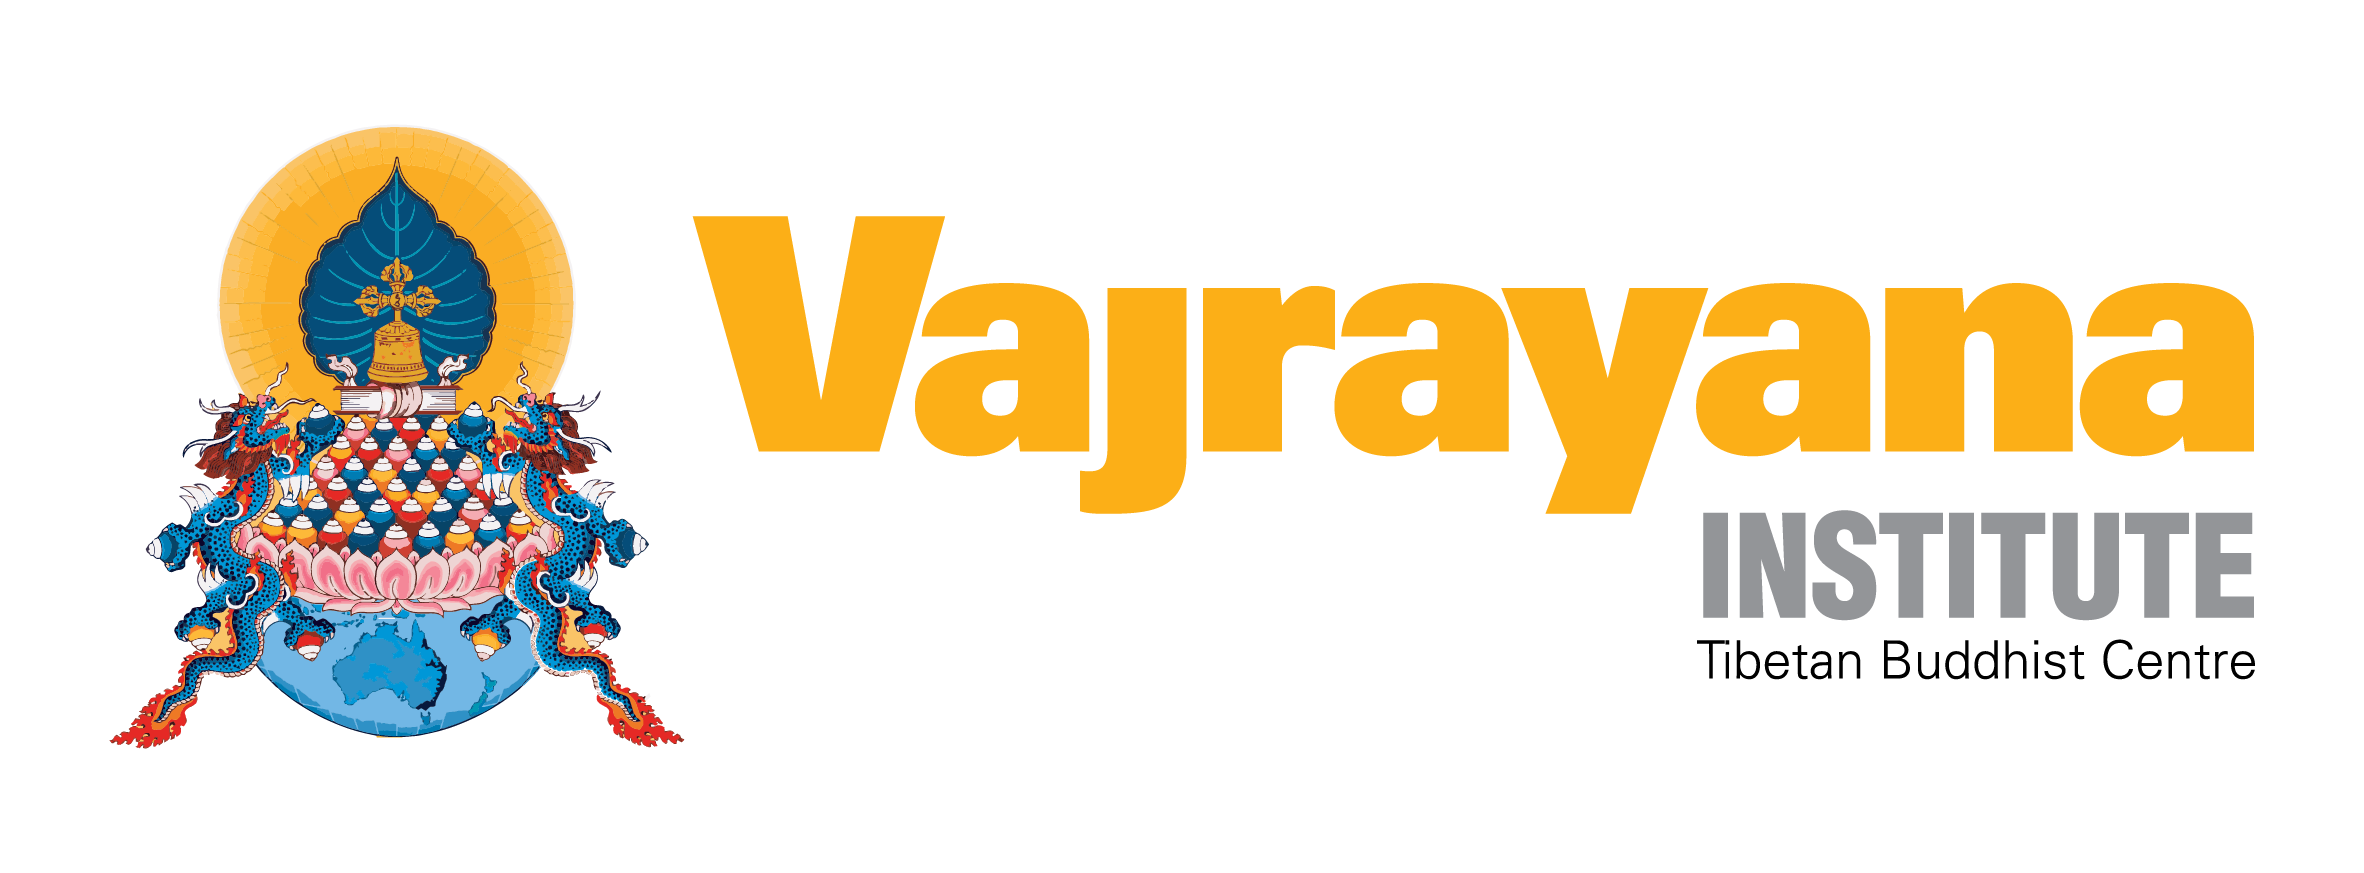 Vajrayana Institute Building Fund logo